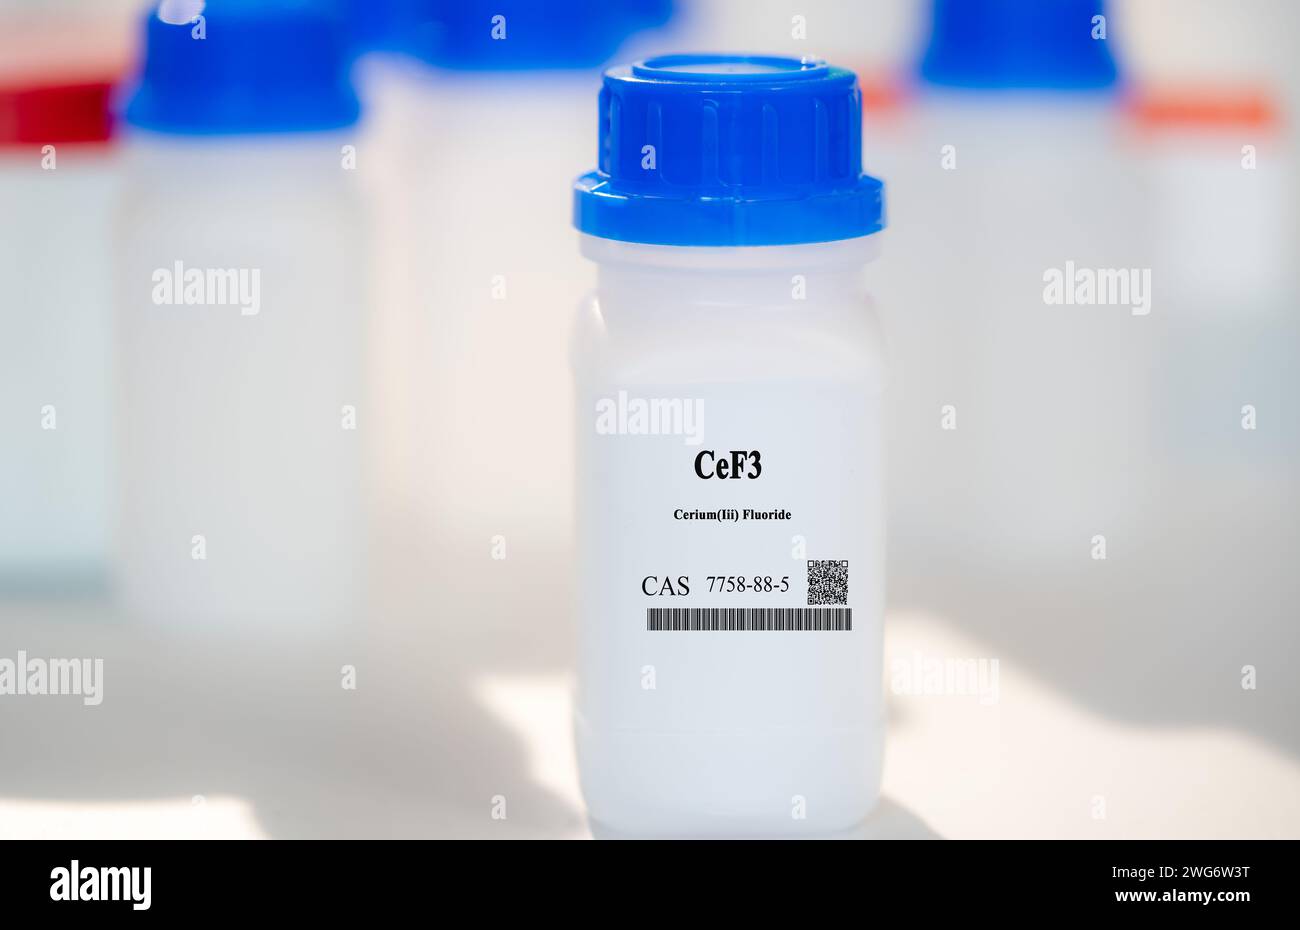 CeF3 cerium(III) fluoruro CAS 7758-88-5 sustancia química en envases de laboratorio de plástico blanco Foto de stock